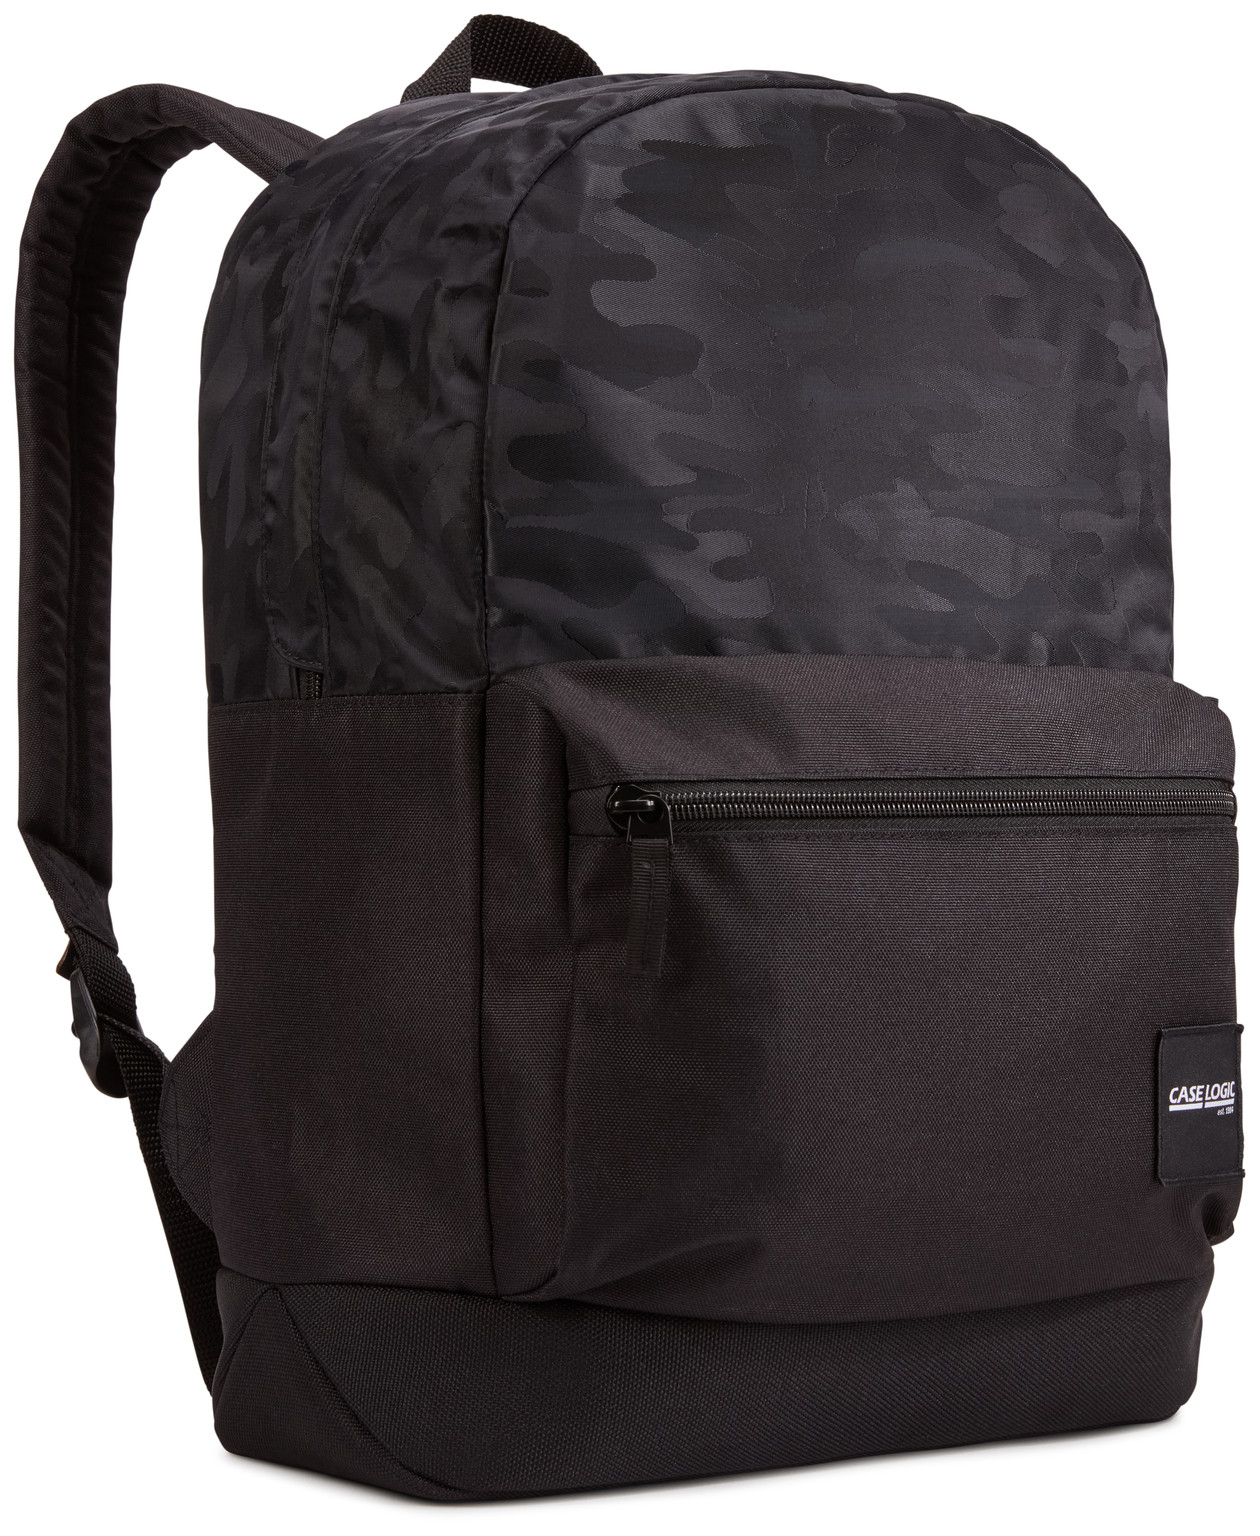  Case Logic Founder Backpack Polyester, 26L, Black Camo